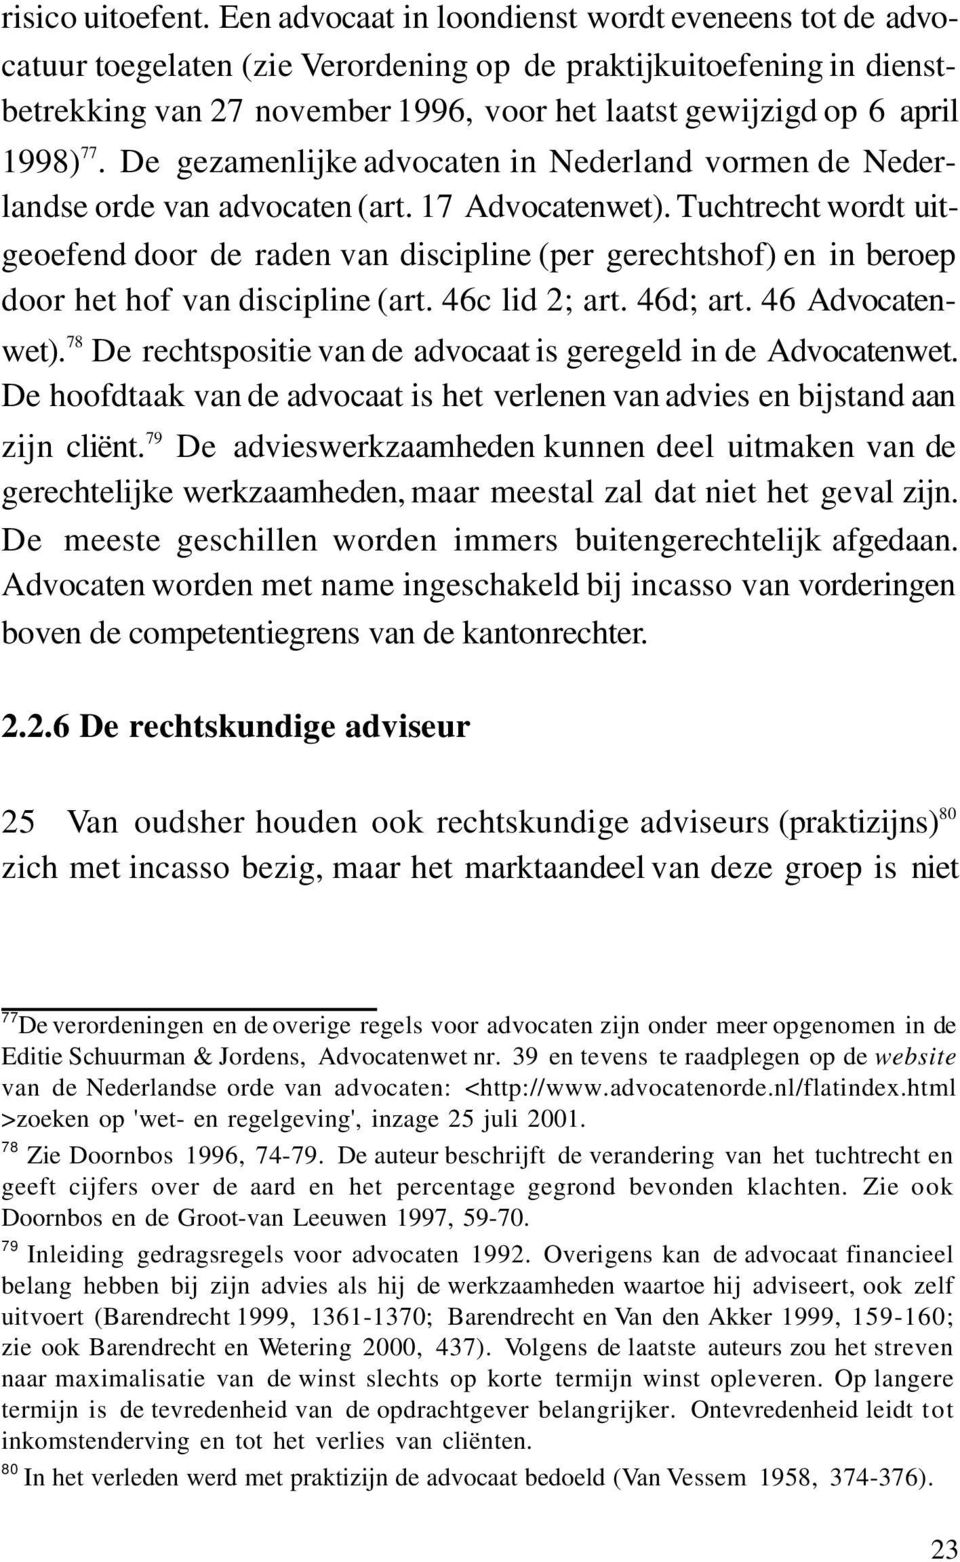 77. De gezamenlijke advocaten in Nederland vormen de Nederlandse orde van advocaten (art. 17 Advocatenwet).